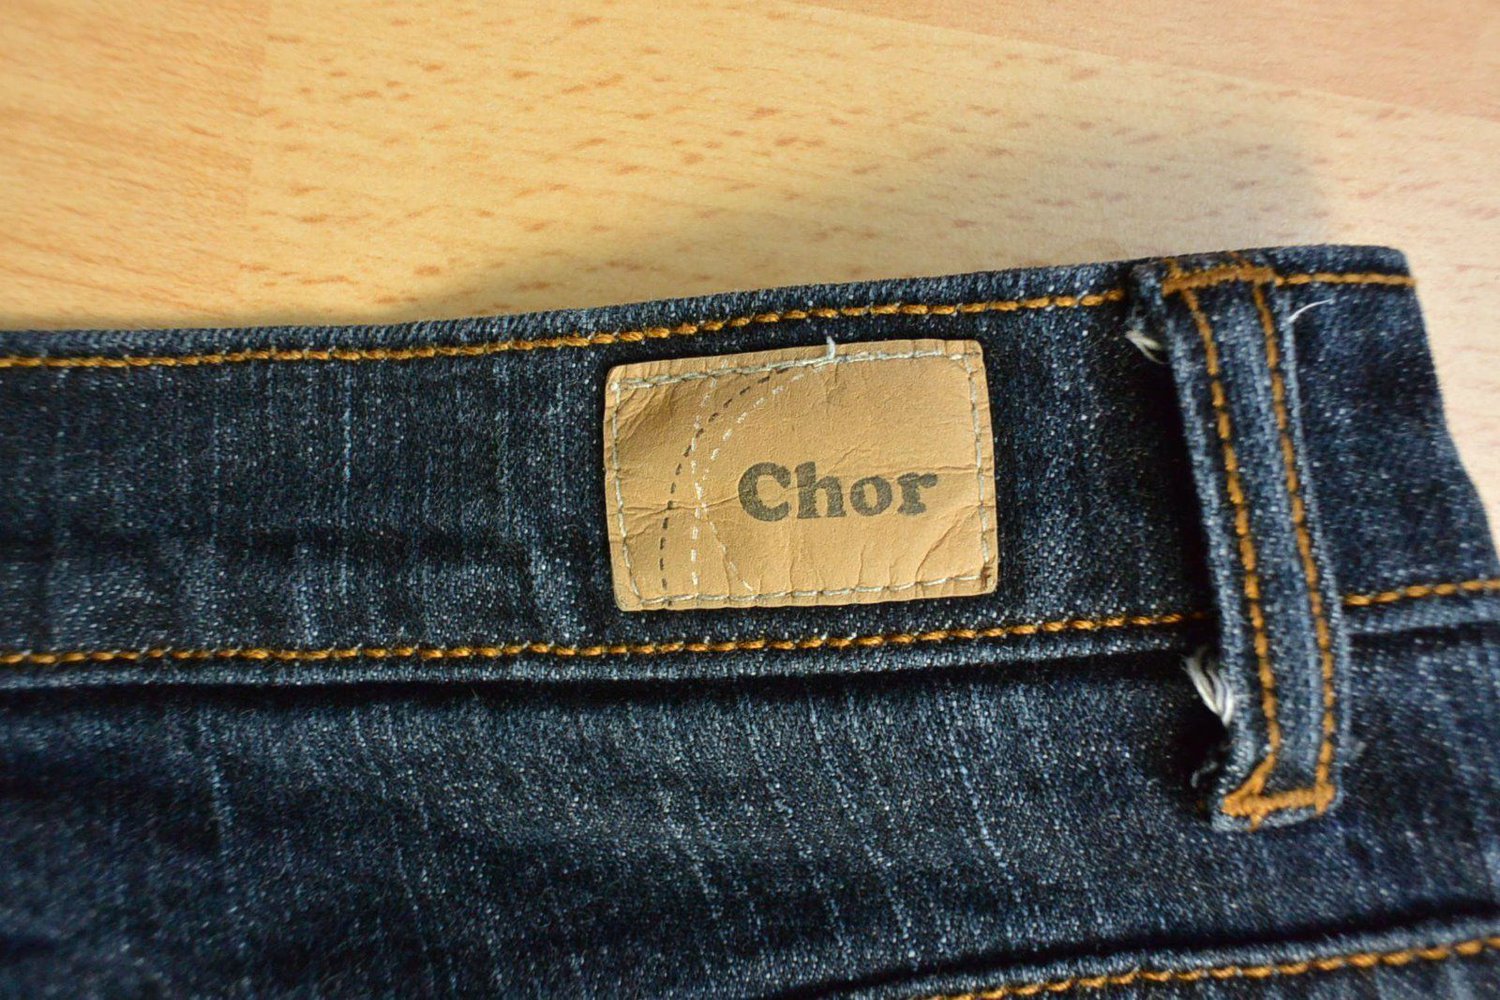 Schicke Jeans von CHOR, boot-cut, Damen, dunkelblau, Grösse 36